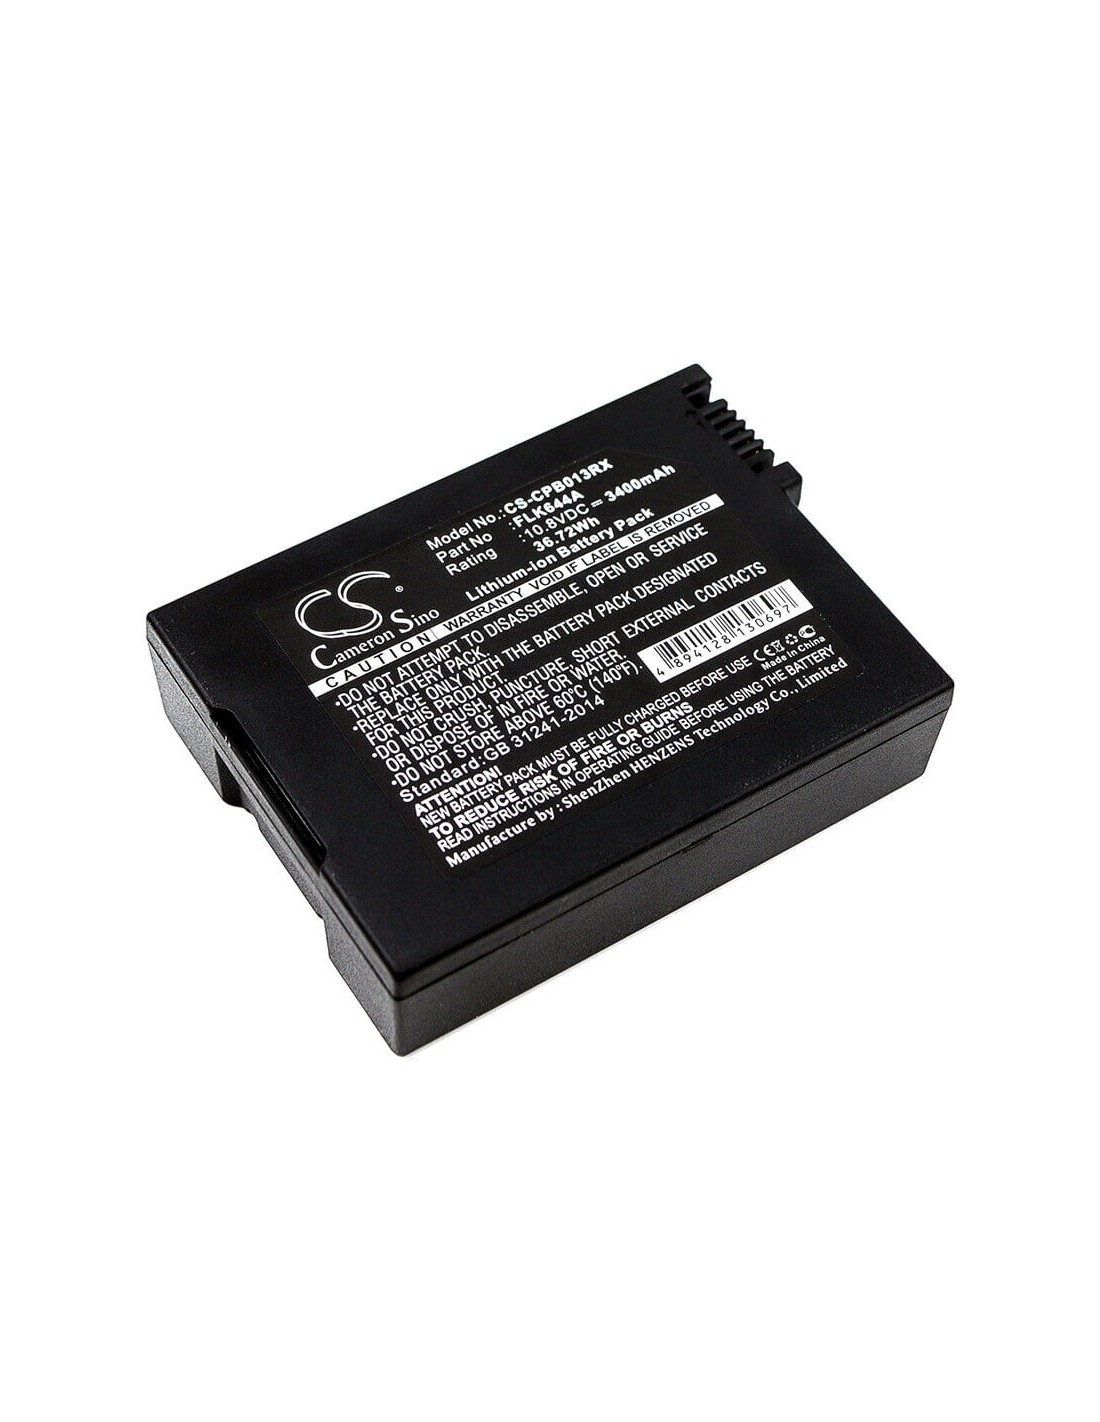 Battery for Cisco 4033435, Flk644a, Pb013, Smpcm1, Foxlink, Flk644a 10.8V, 3400mAh - 36.72Wh